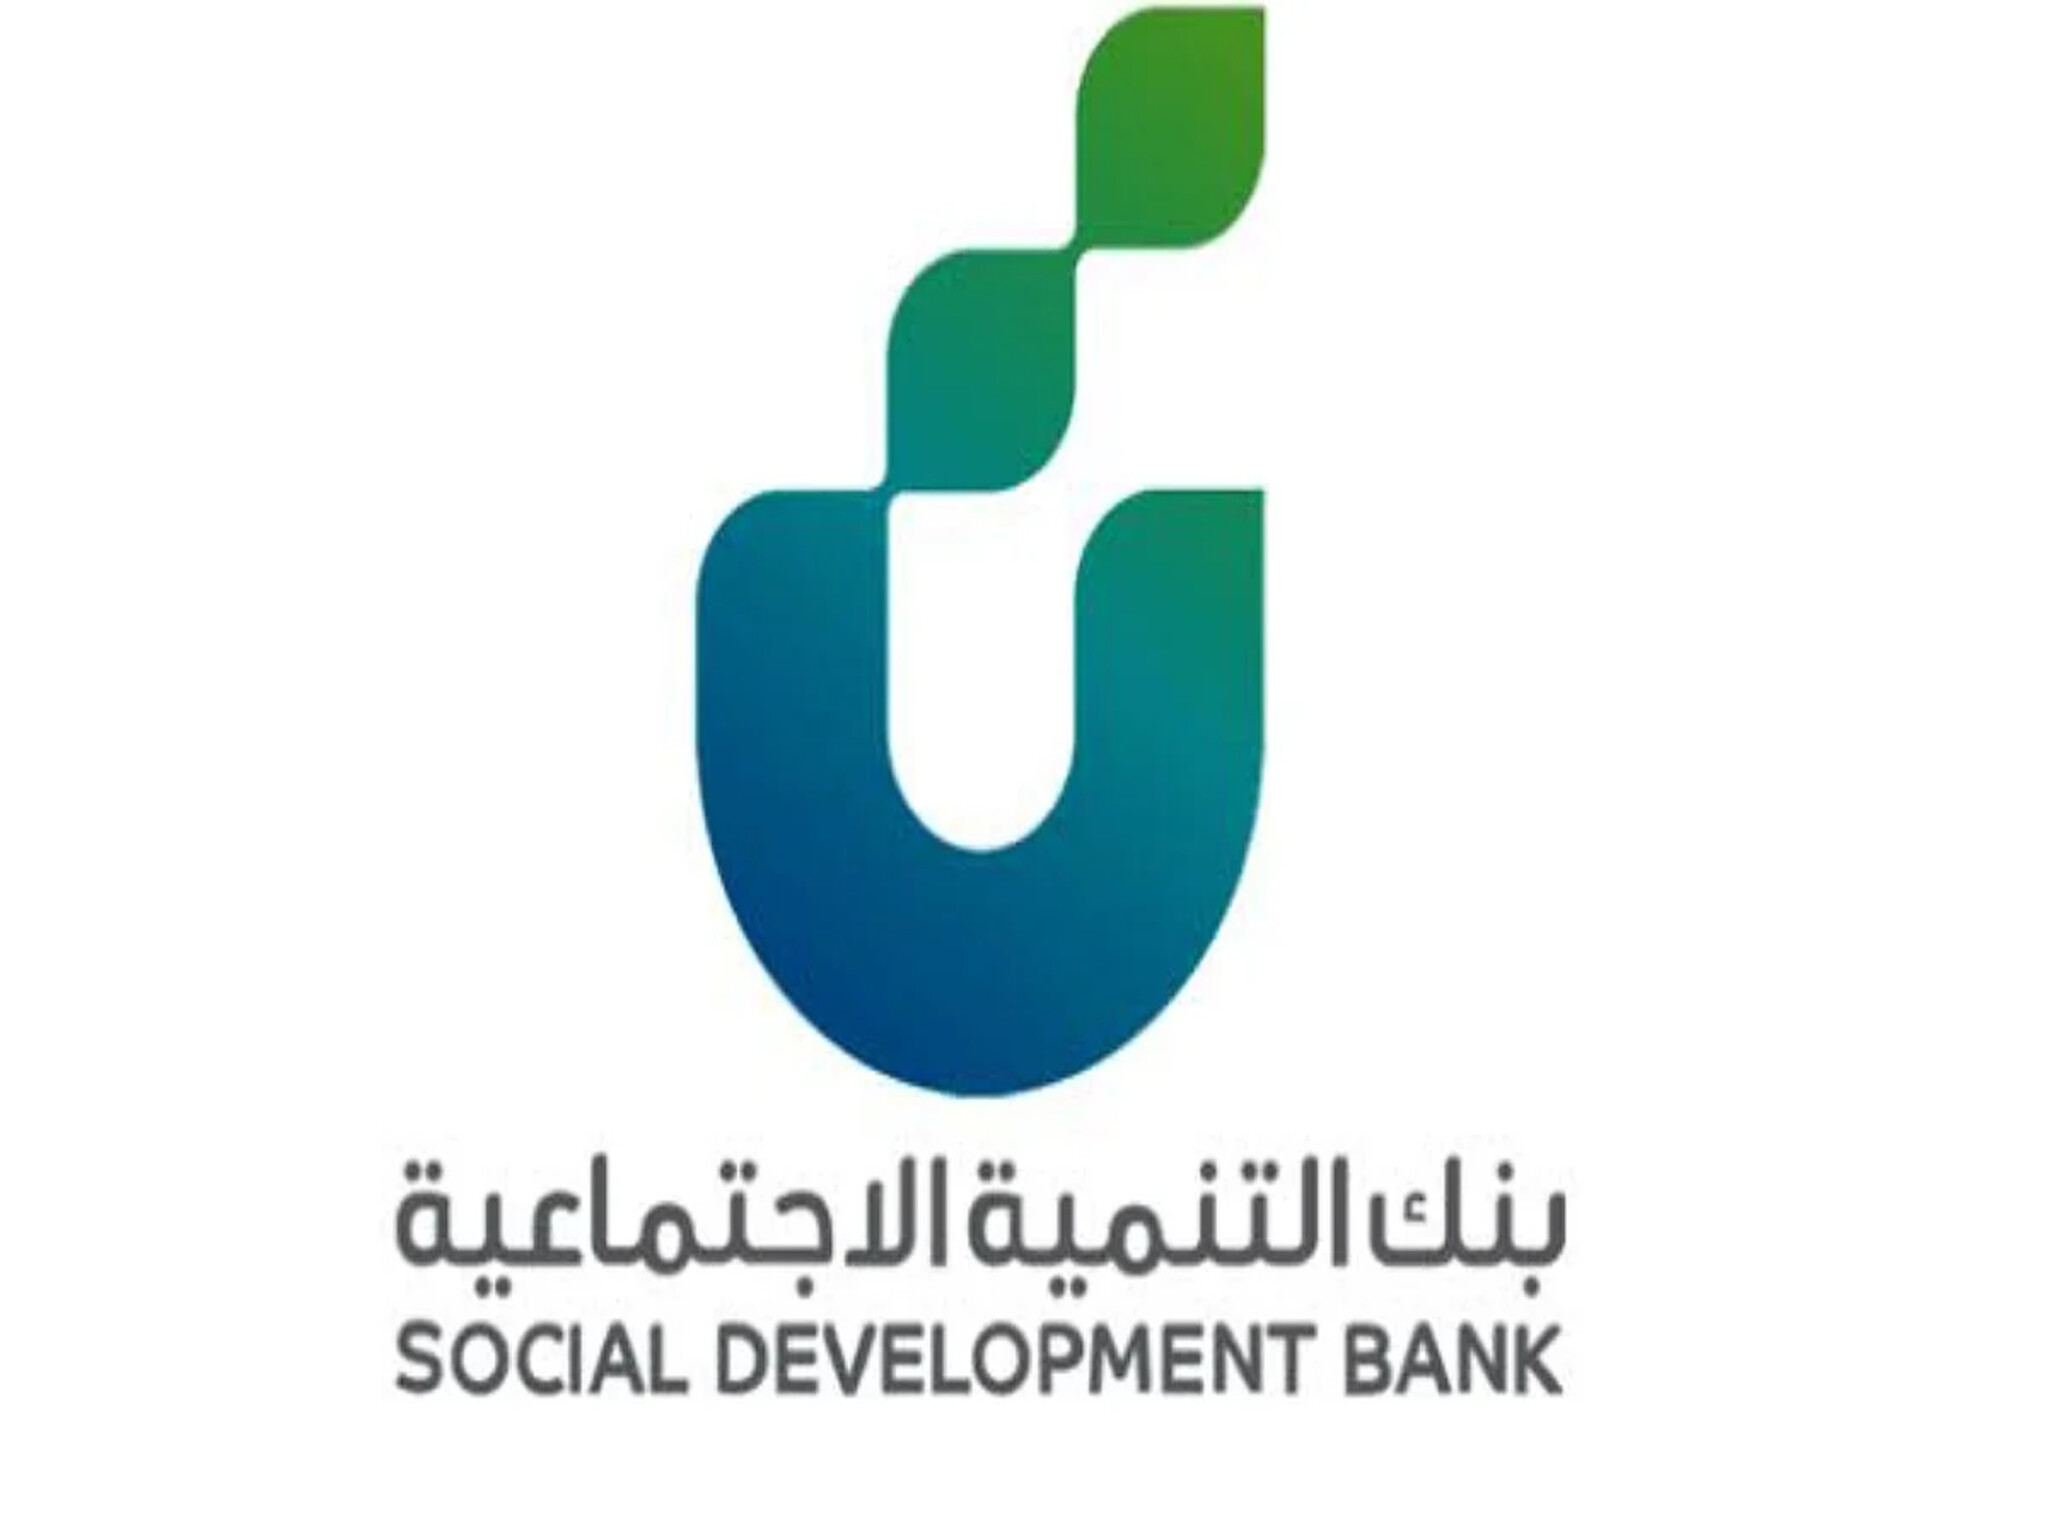 بنك التنمية | إيداع نقدي للسعوديين 120,000 ريال بالتقسيط على 40 شهر "للعمل الحر"